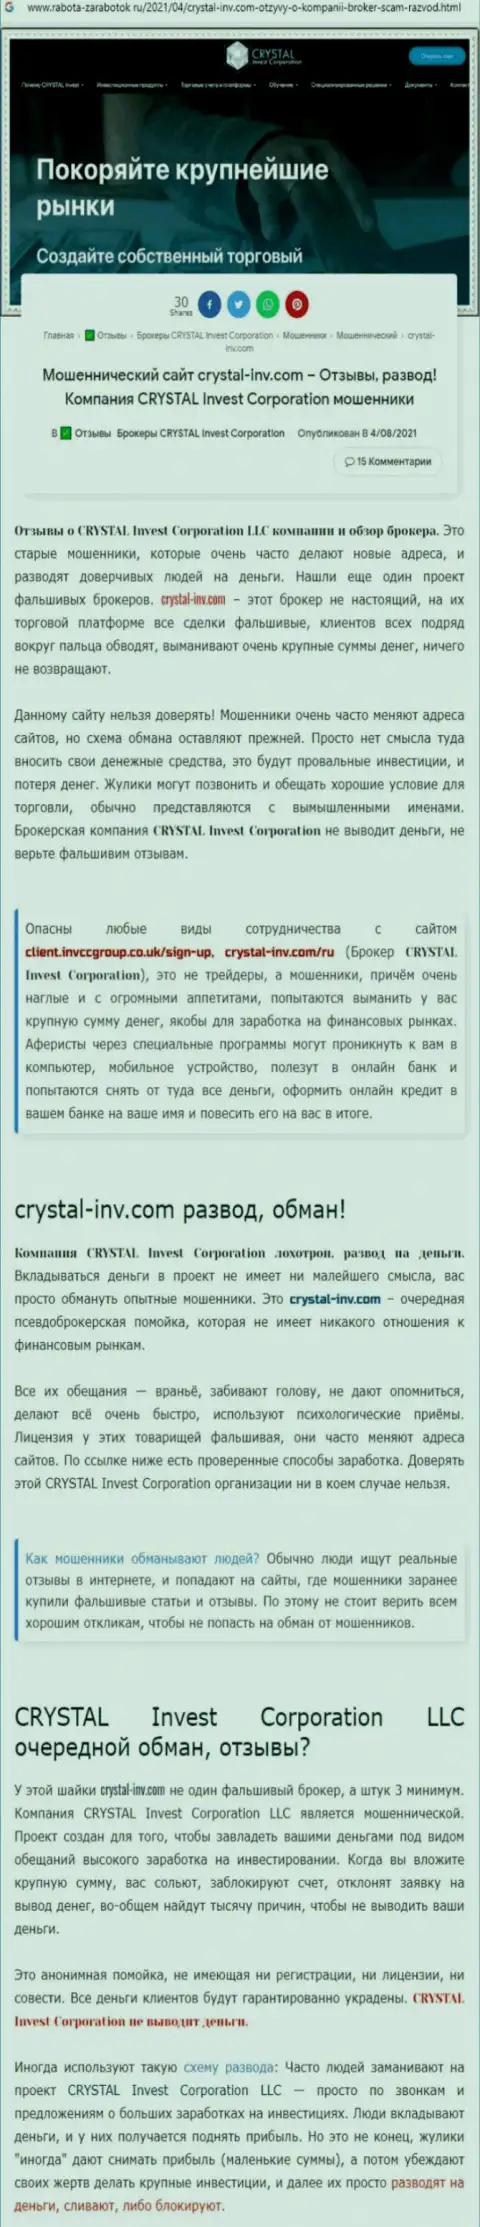 Материал, разоблачающий организацию Crystal Inv, который взят с веб-сайта с обзорами неправомерных деяний различных организаций